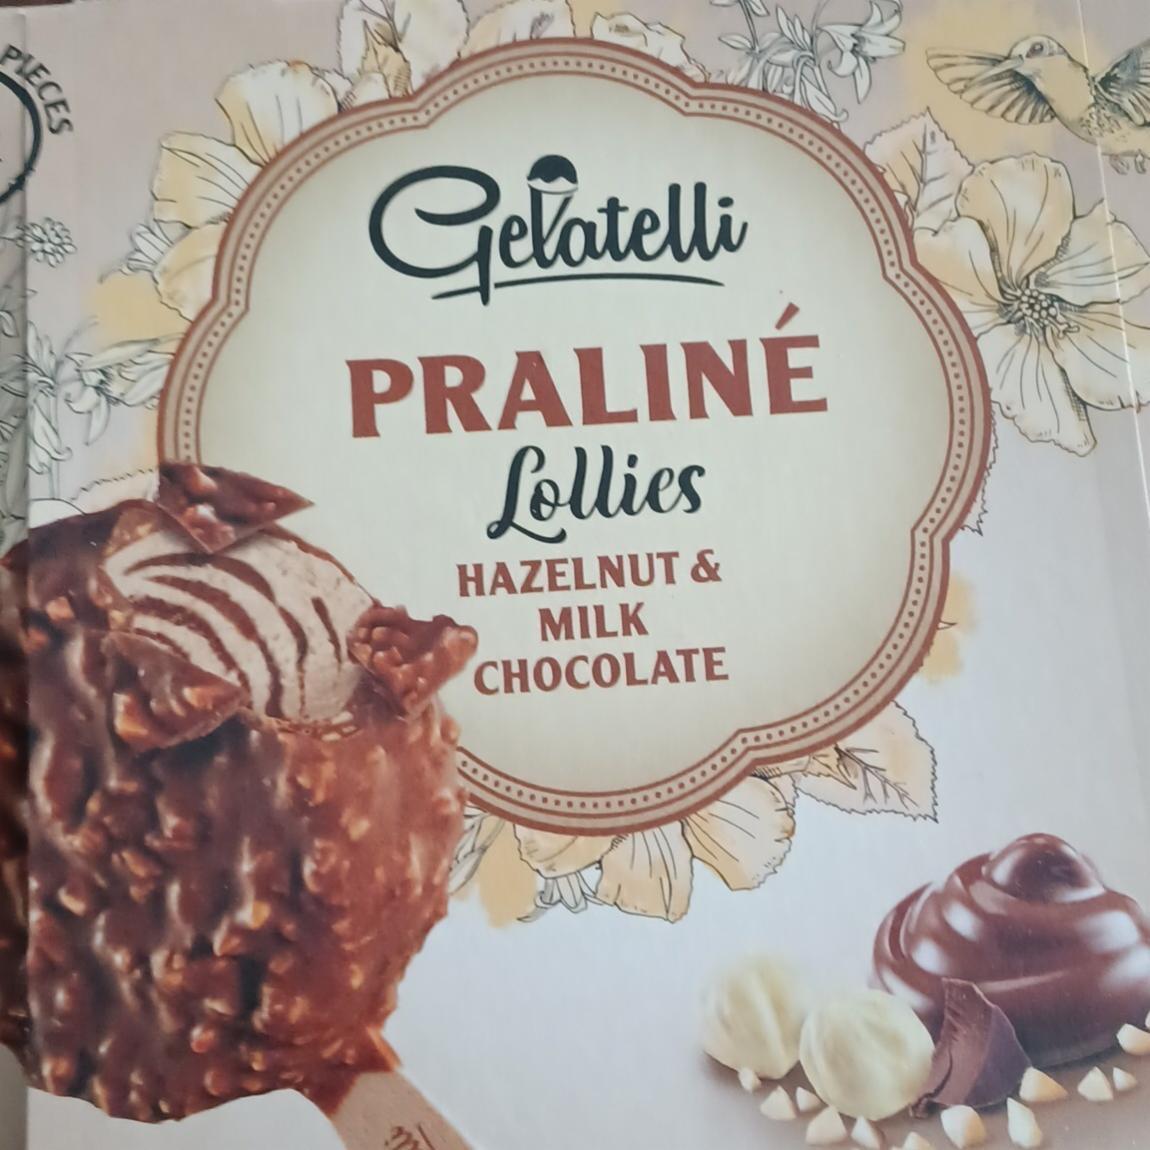 Képek - Praliné lollies Hazelnut & Milk chocolate Gelatelli